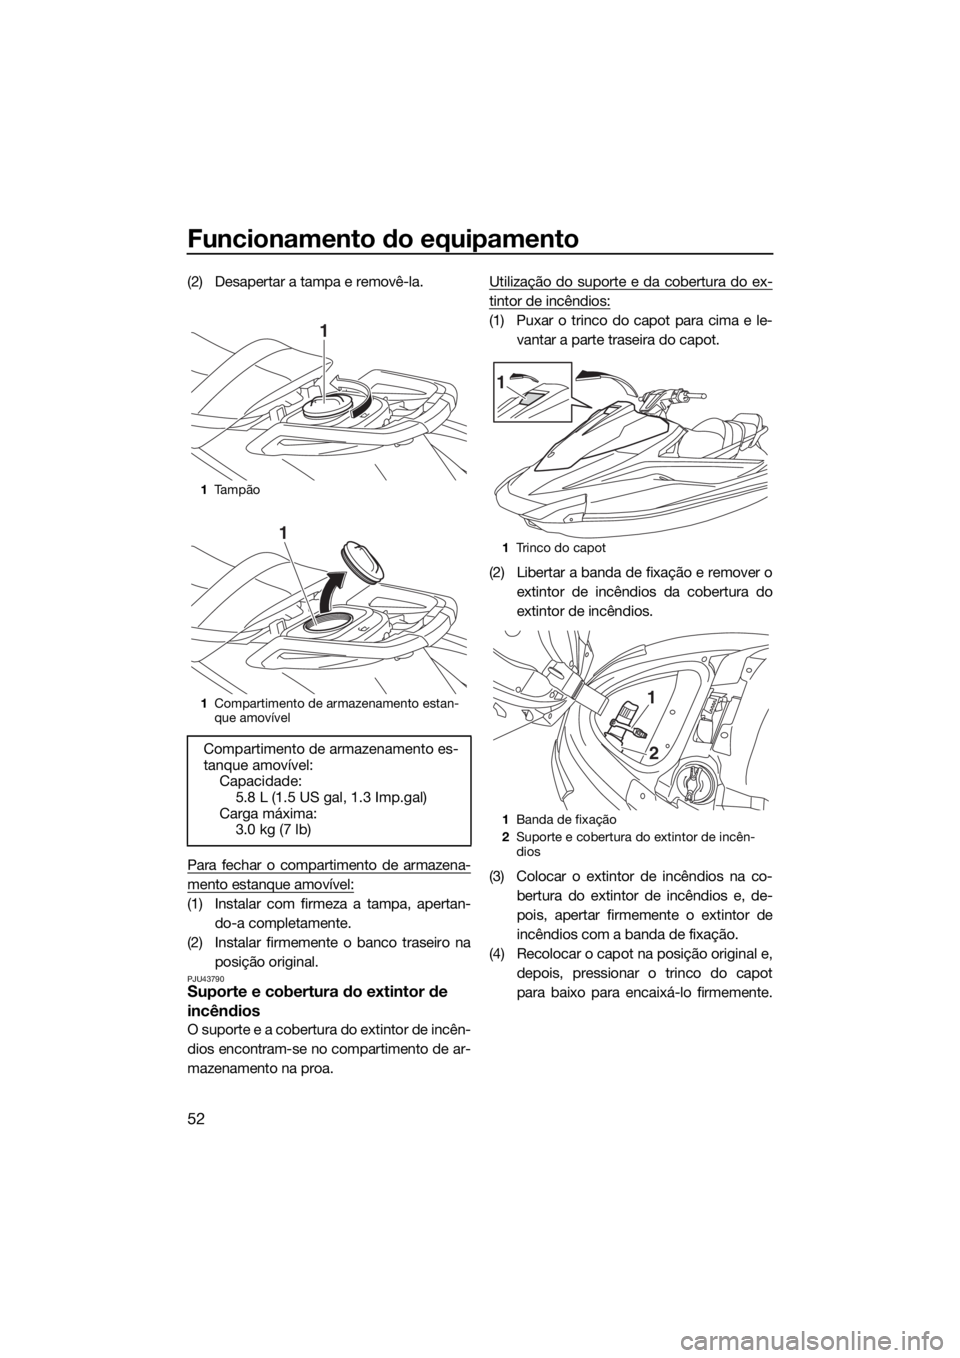 YAMAHA VX-C 2019  Manual de utilização (in Portuguese) Funcionamento do equipamento
52
(2) Desapertar a tampa e removê-la.
Para fechar o compartimento de armazena-
mento estanque amovível:
(1) Instalar com firmeza a tampa, apertan-
do-a completamente.
(